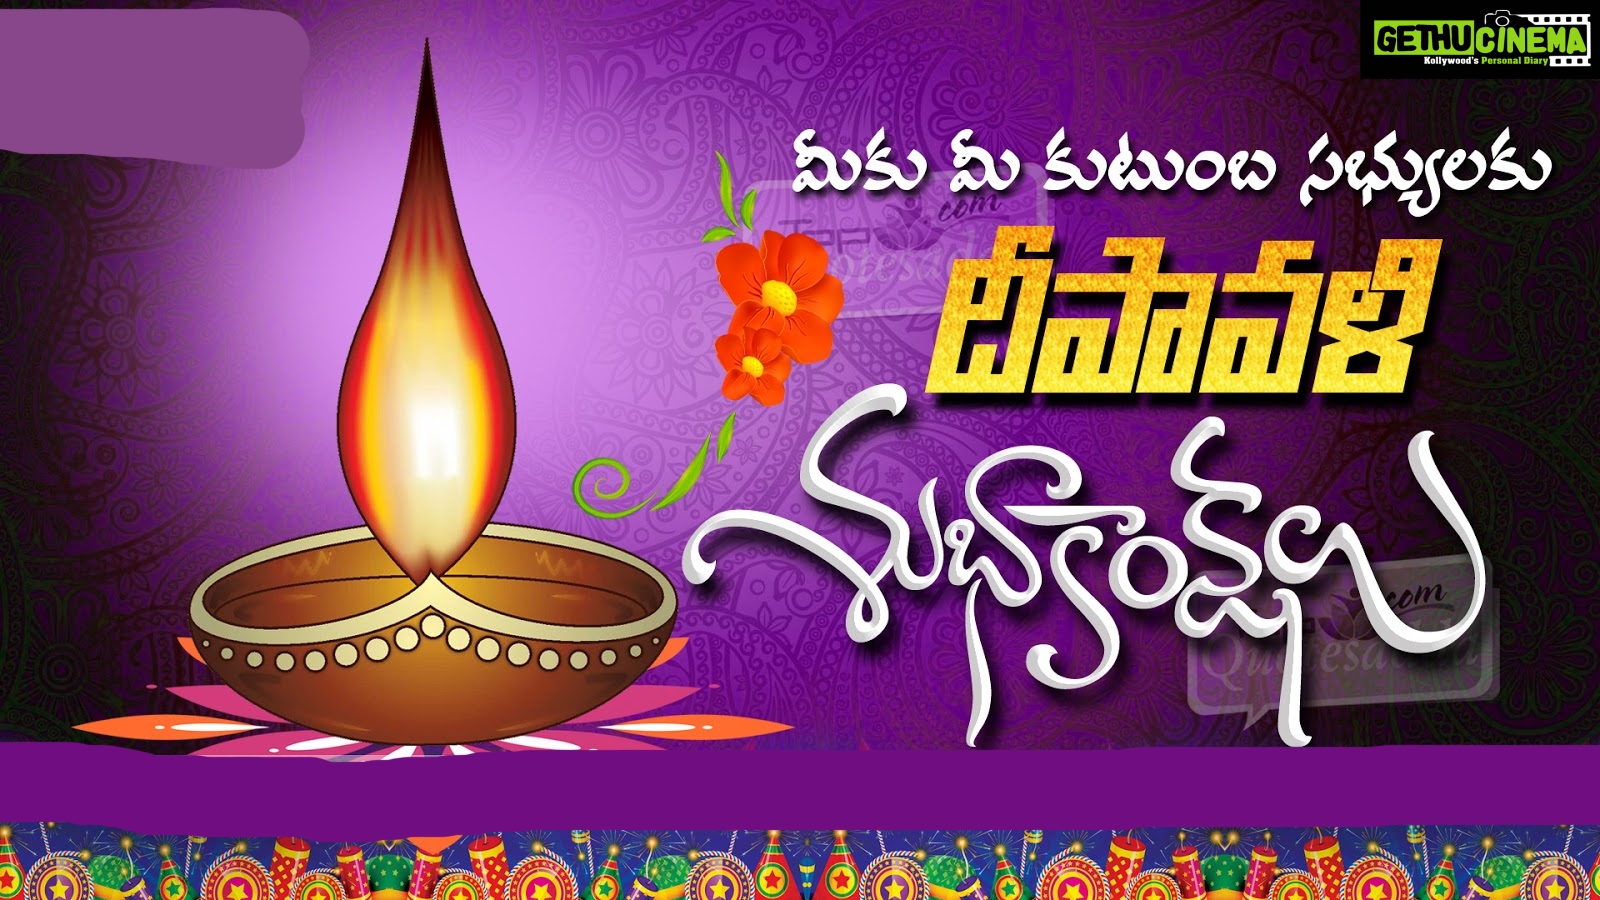 Happy Diwali wishes telugu, festival, divali, hd - Gethu Cinema